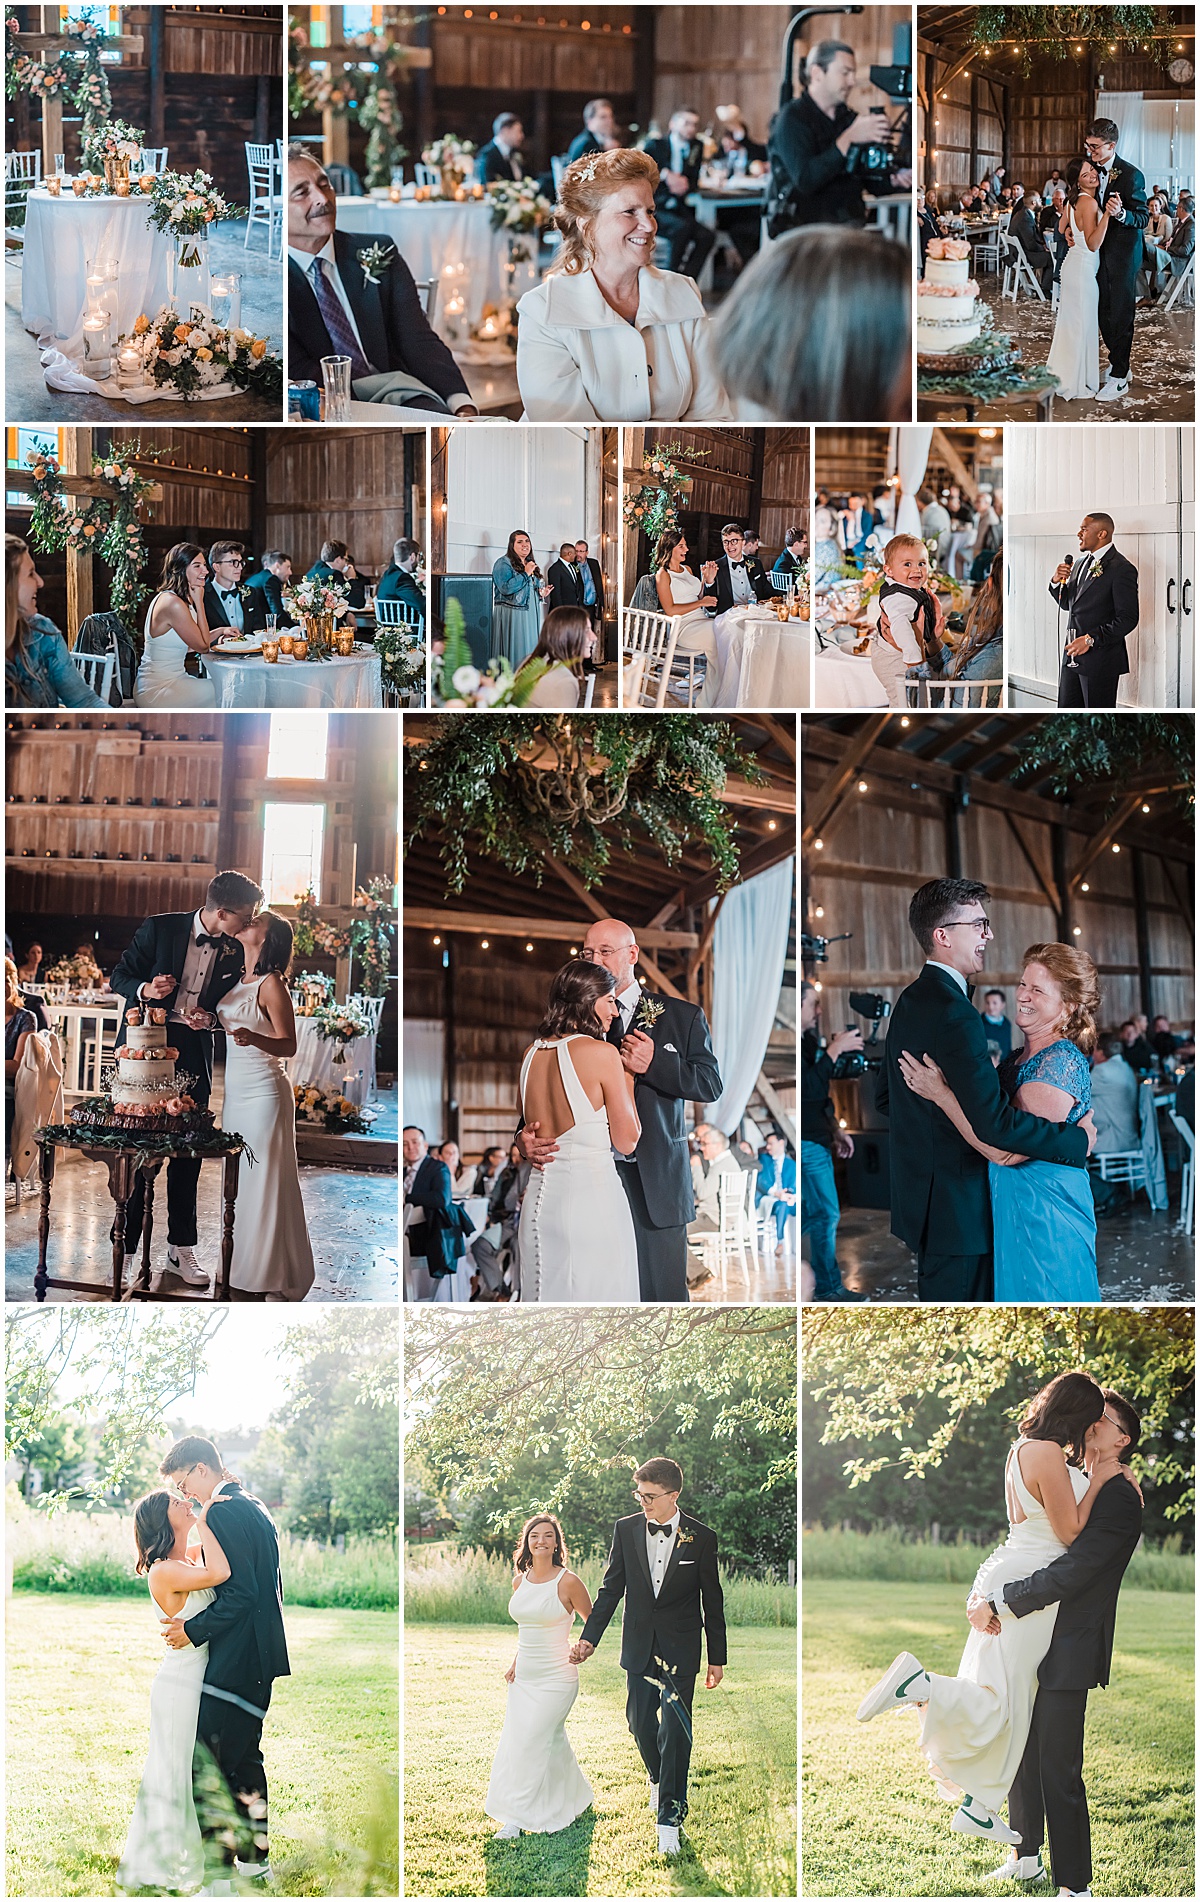 Dandelion Farm Wedding Reception